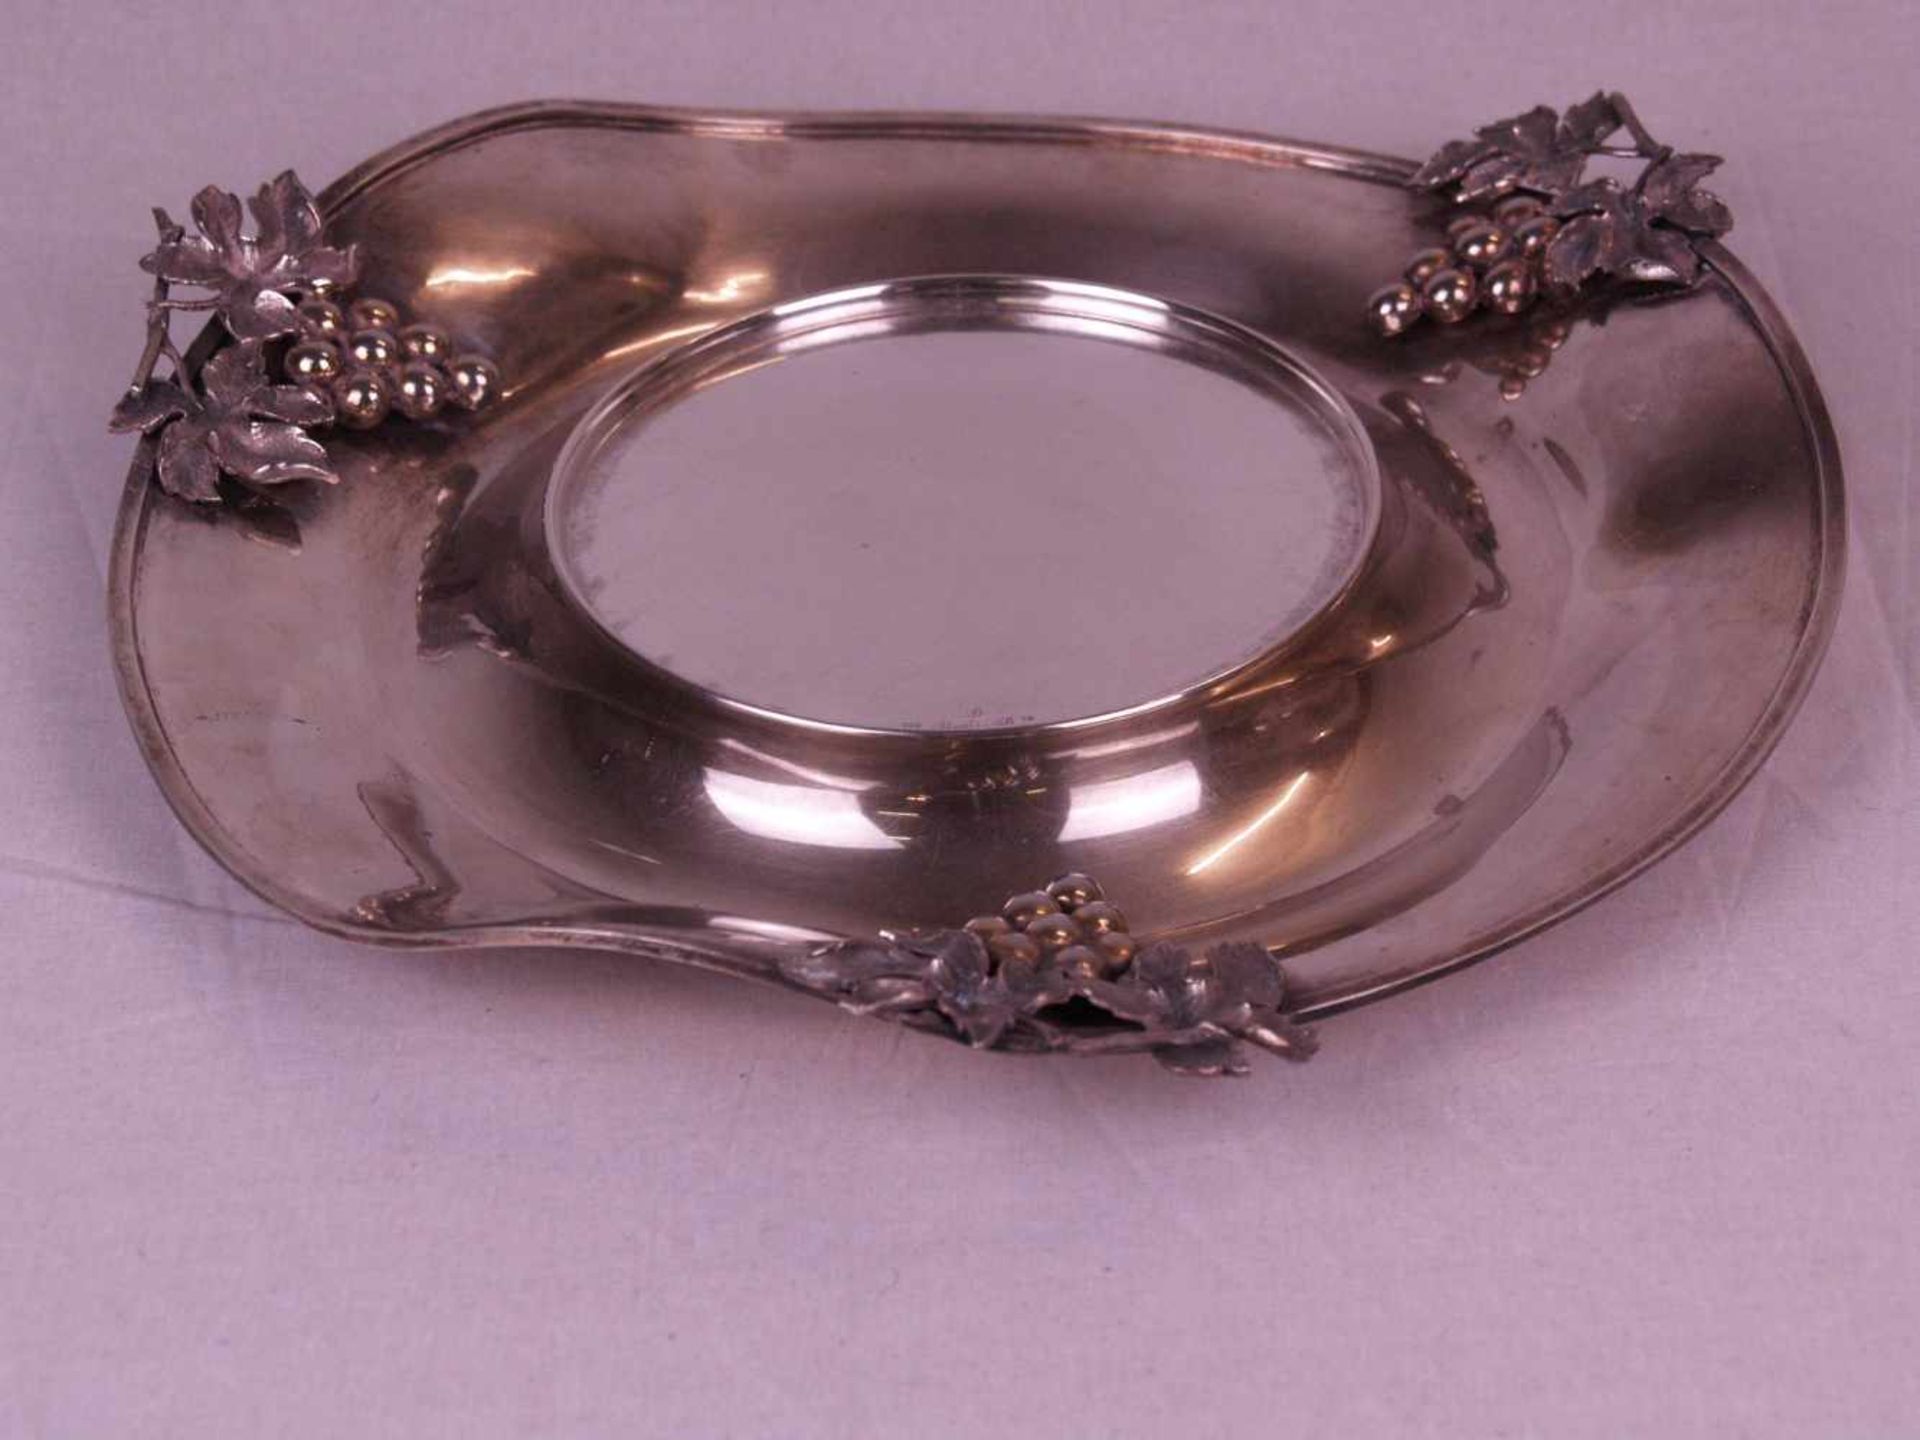 Obstschale mit Presentoir - 900er Silber,gepunzt,2-tlg,runde unregelmäßige Form mit gewelltem Rand, - Bild 3 aus 6